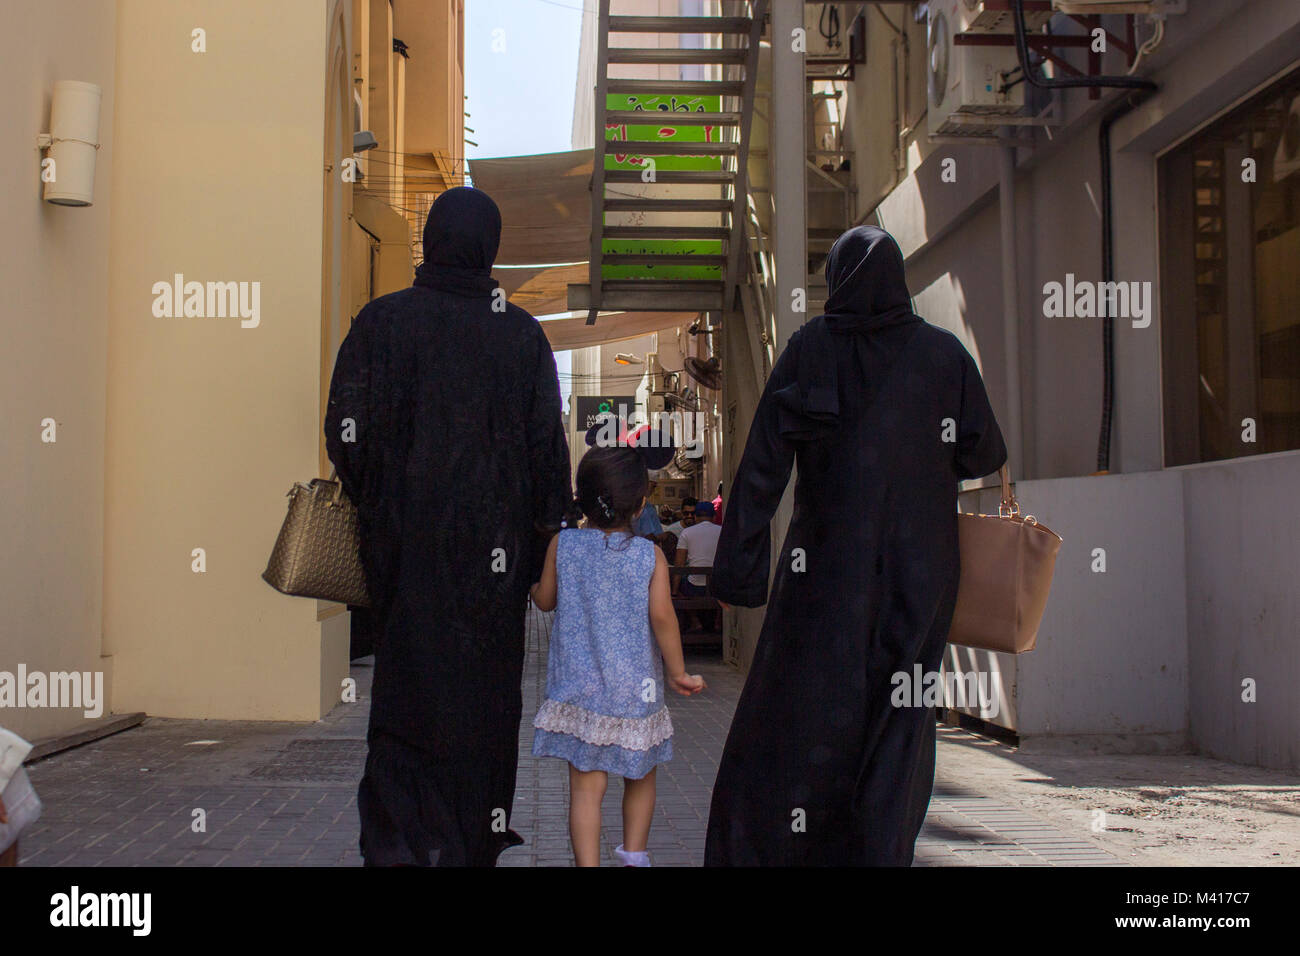 Moyen orient femme amener son enfant à l'extérieur, marcher dans une allée portant burqa Banque D'Images